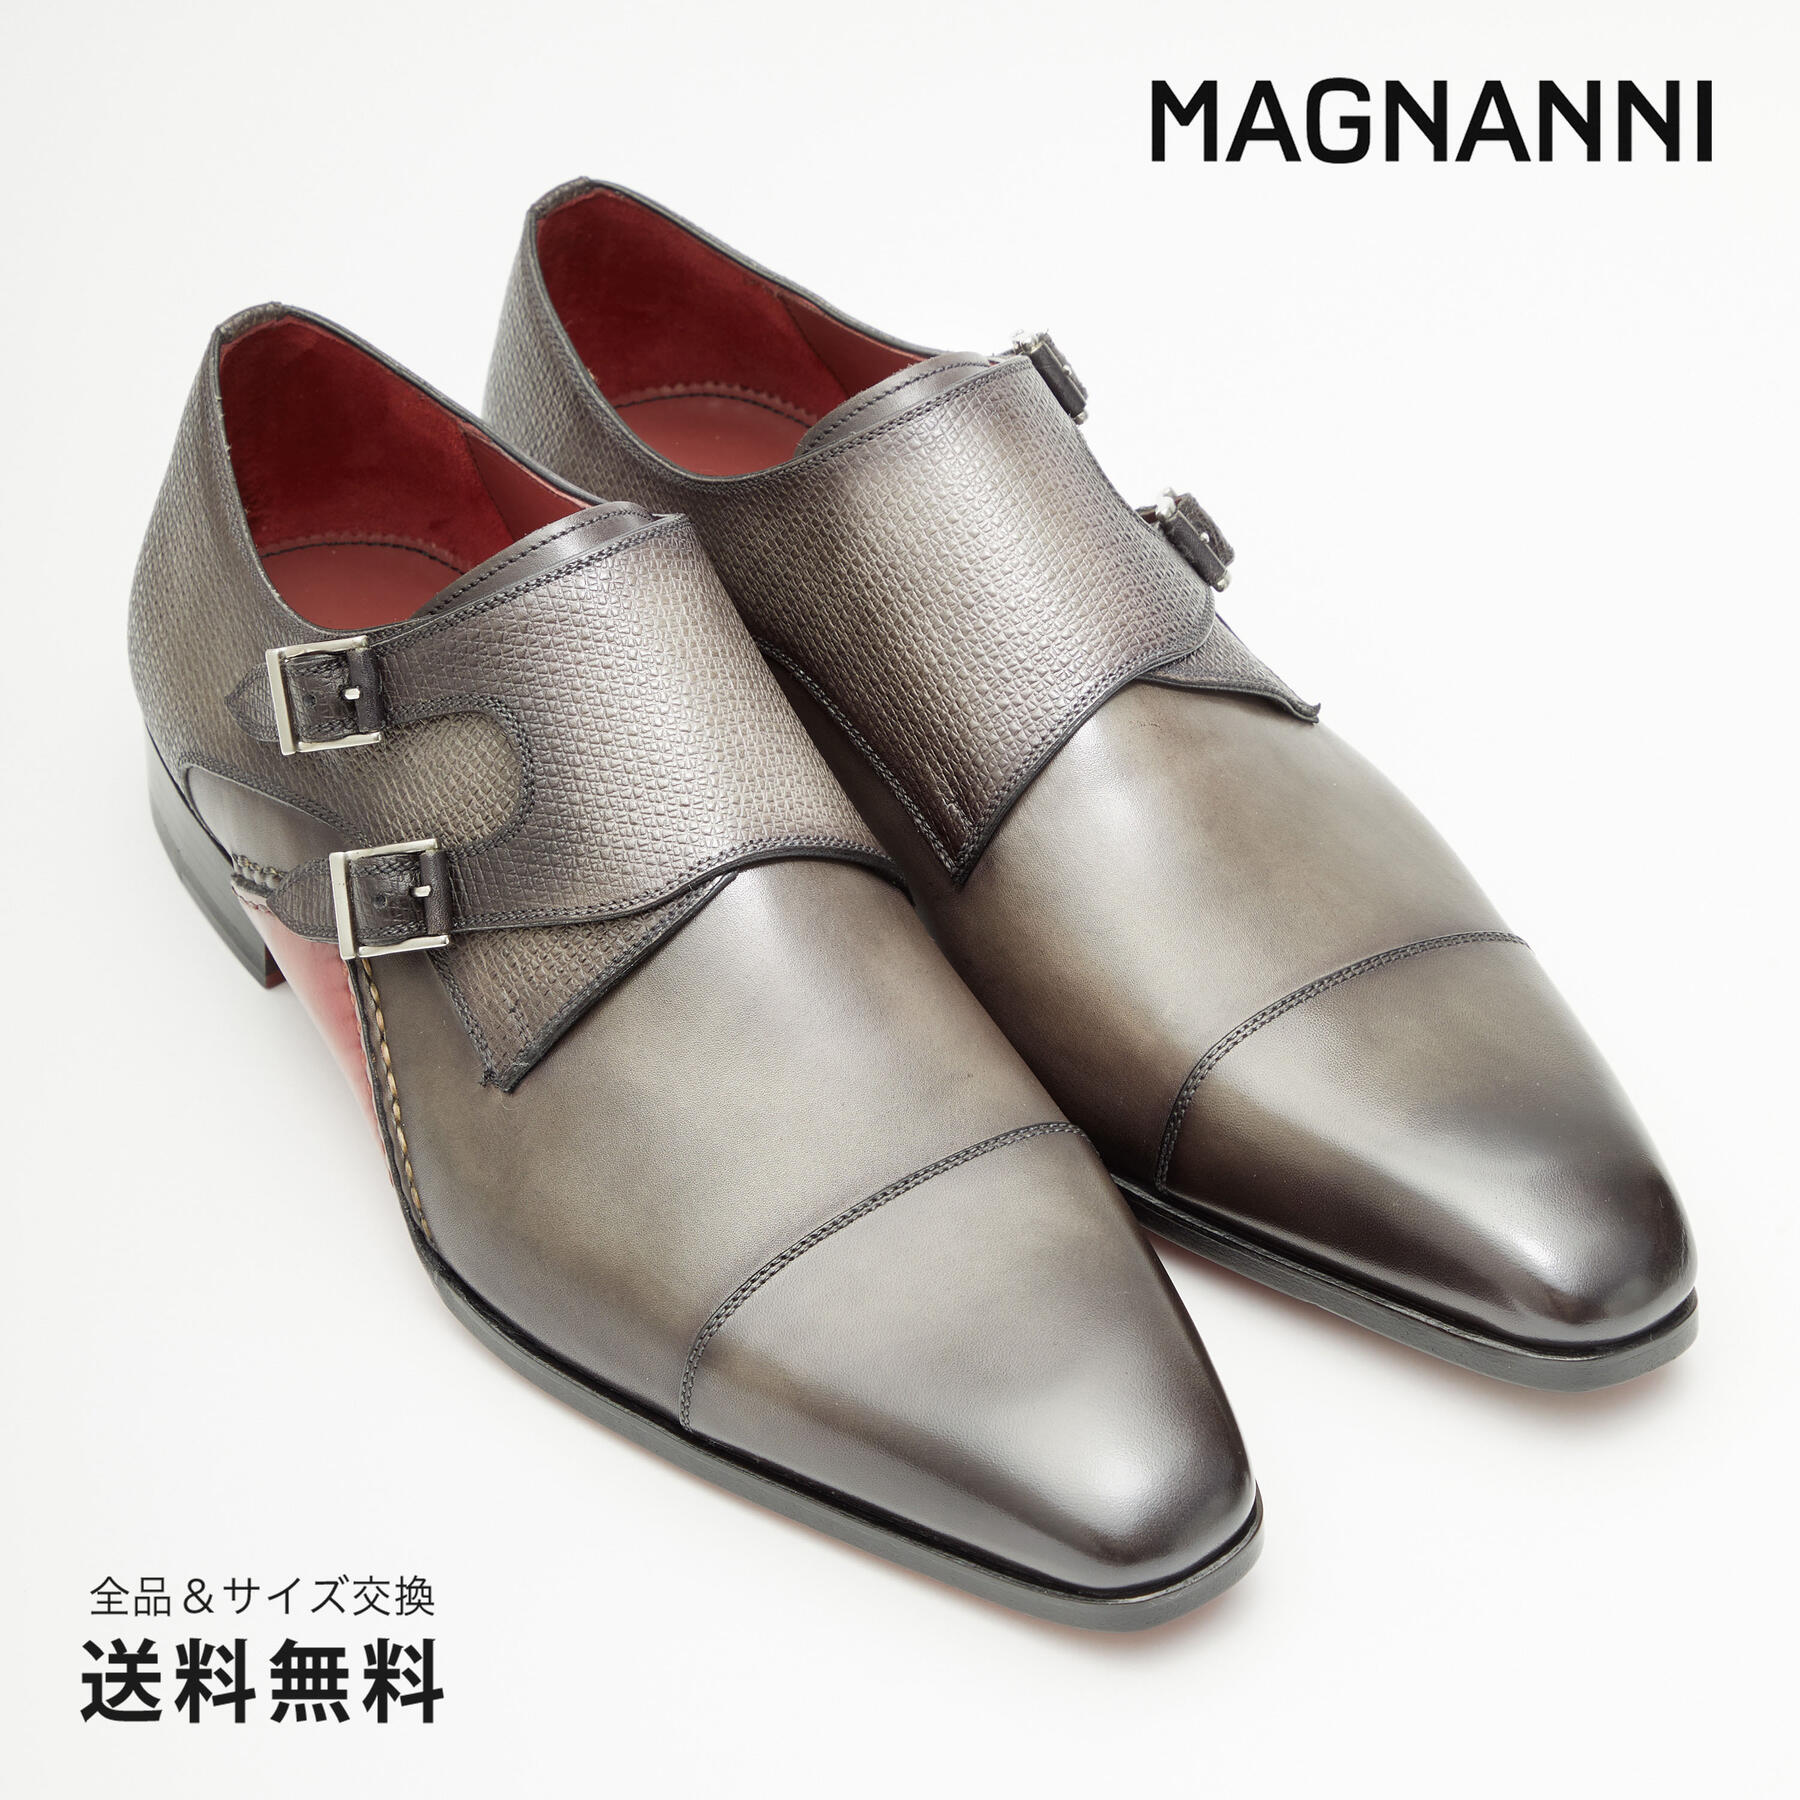 ビジネスシューズ 革靴 マグナーニ ダブルモンクストラップの人気商品 